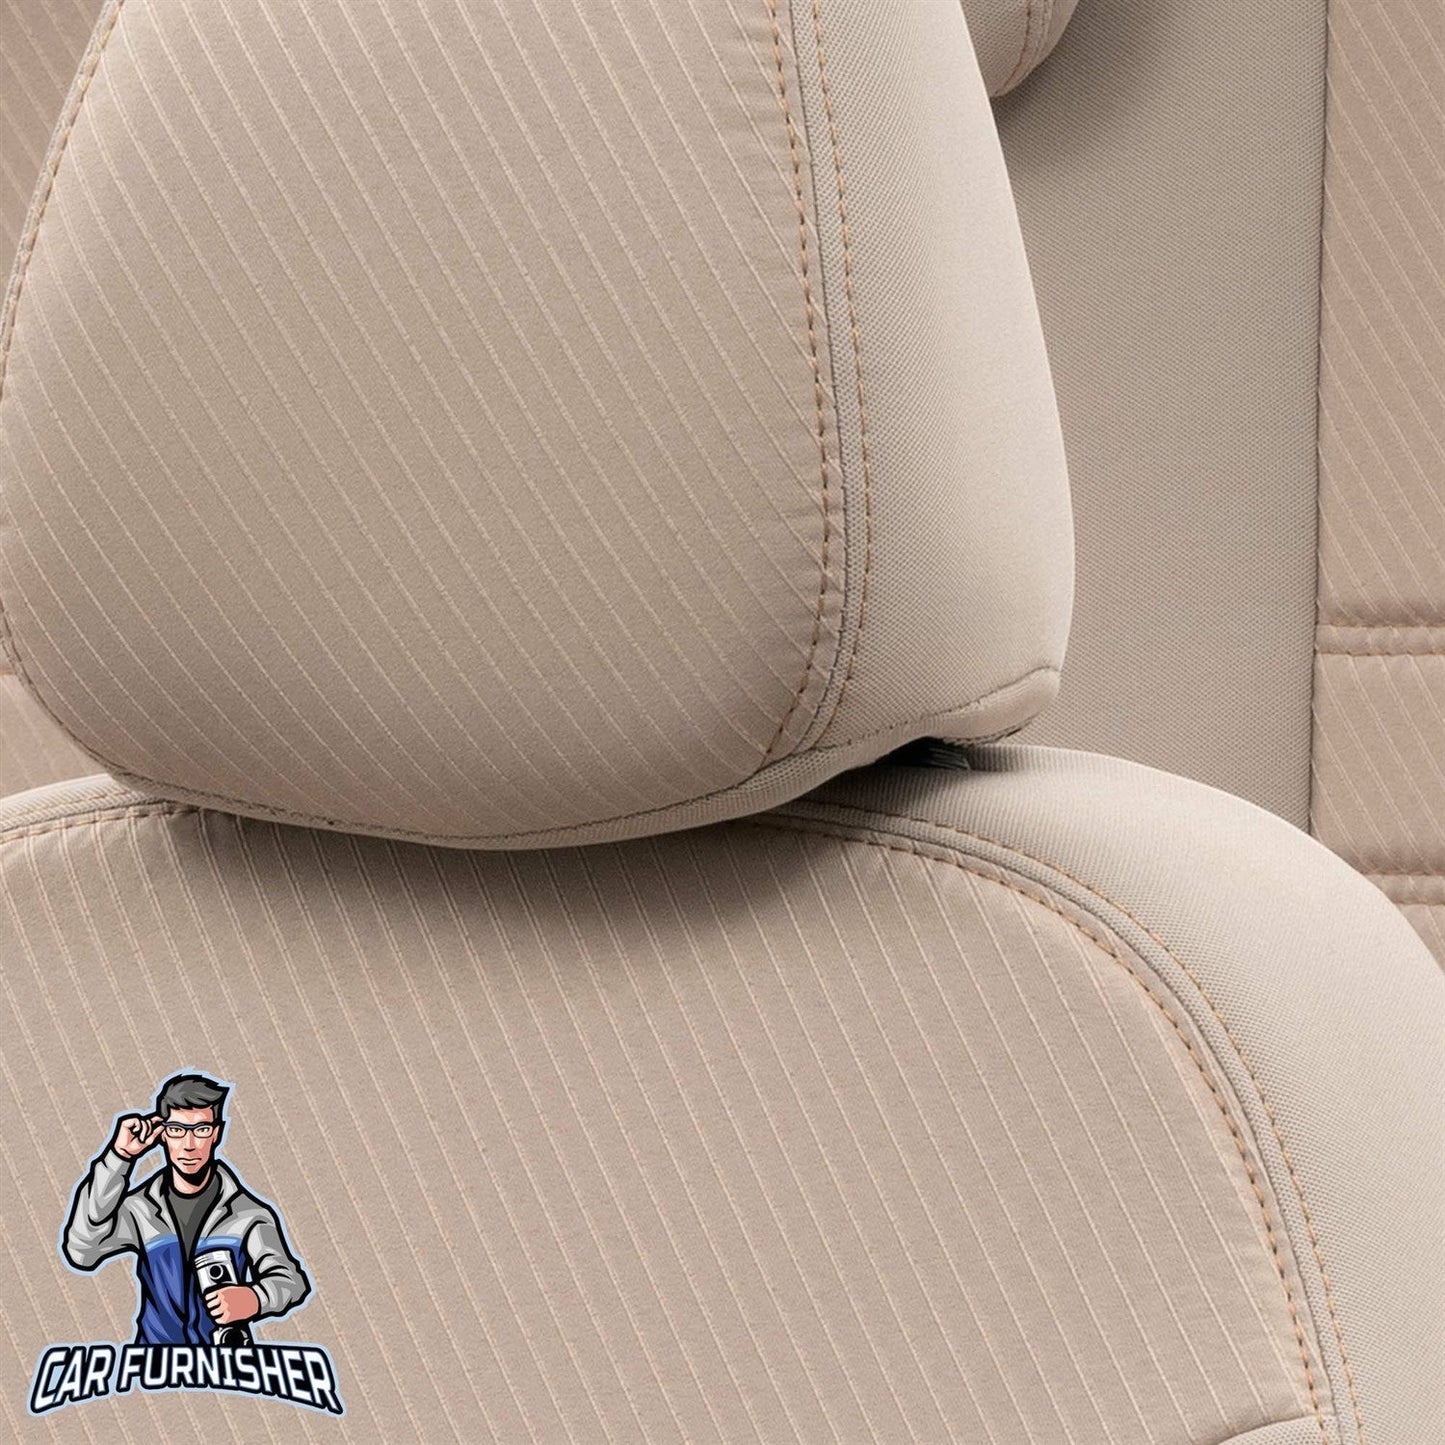 Renault Twingo Seat Cover Original Jacquard Design Dark Beige Jacquard Fabric